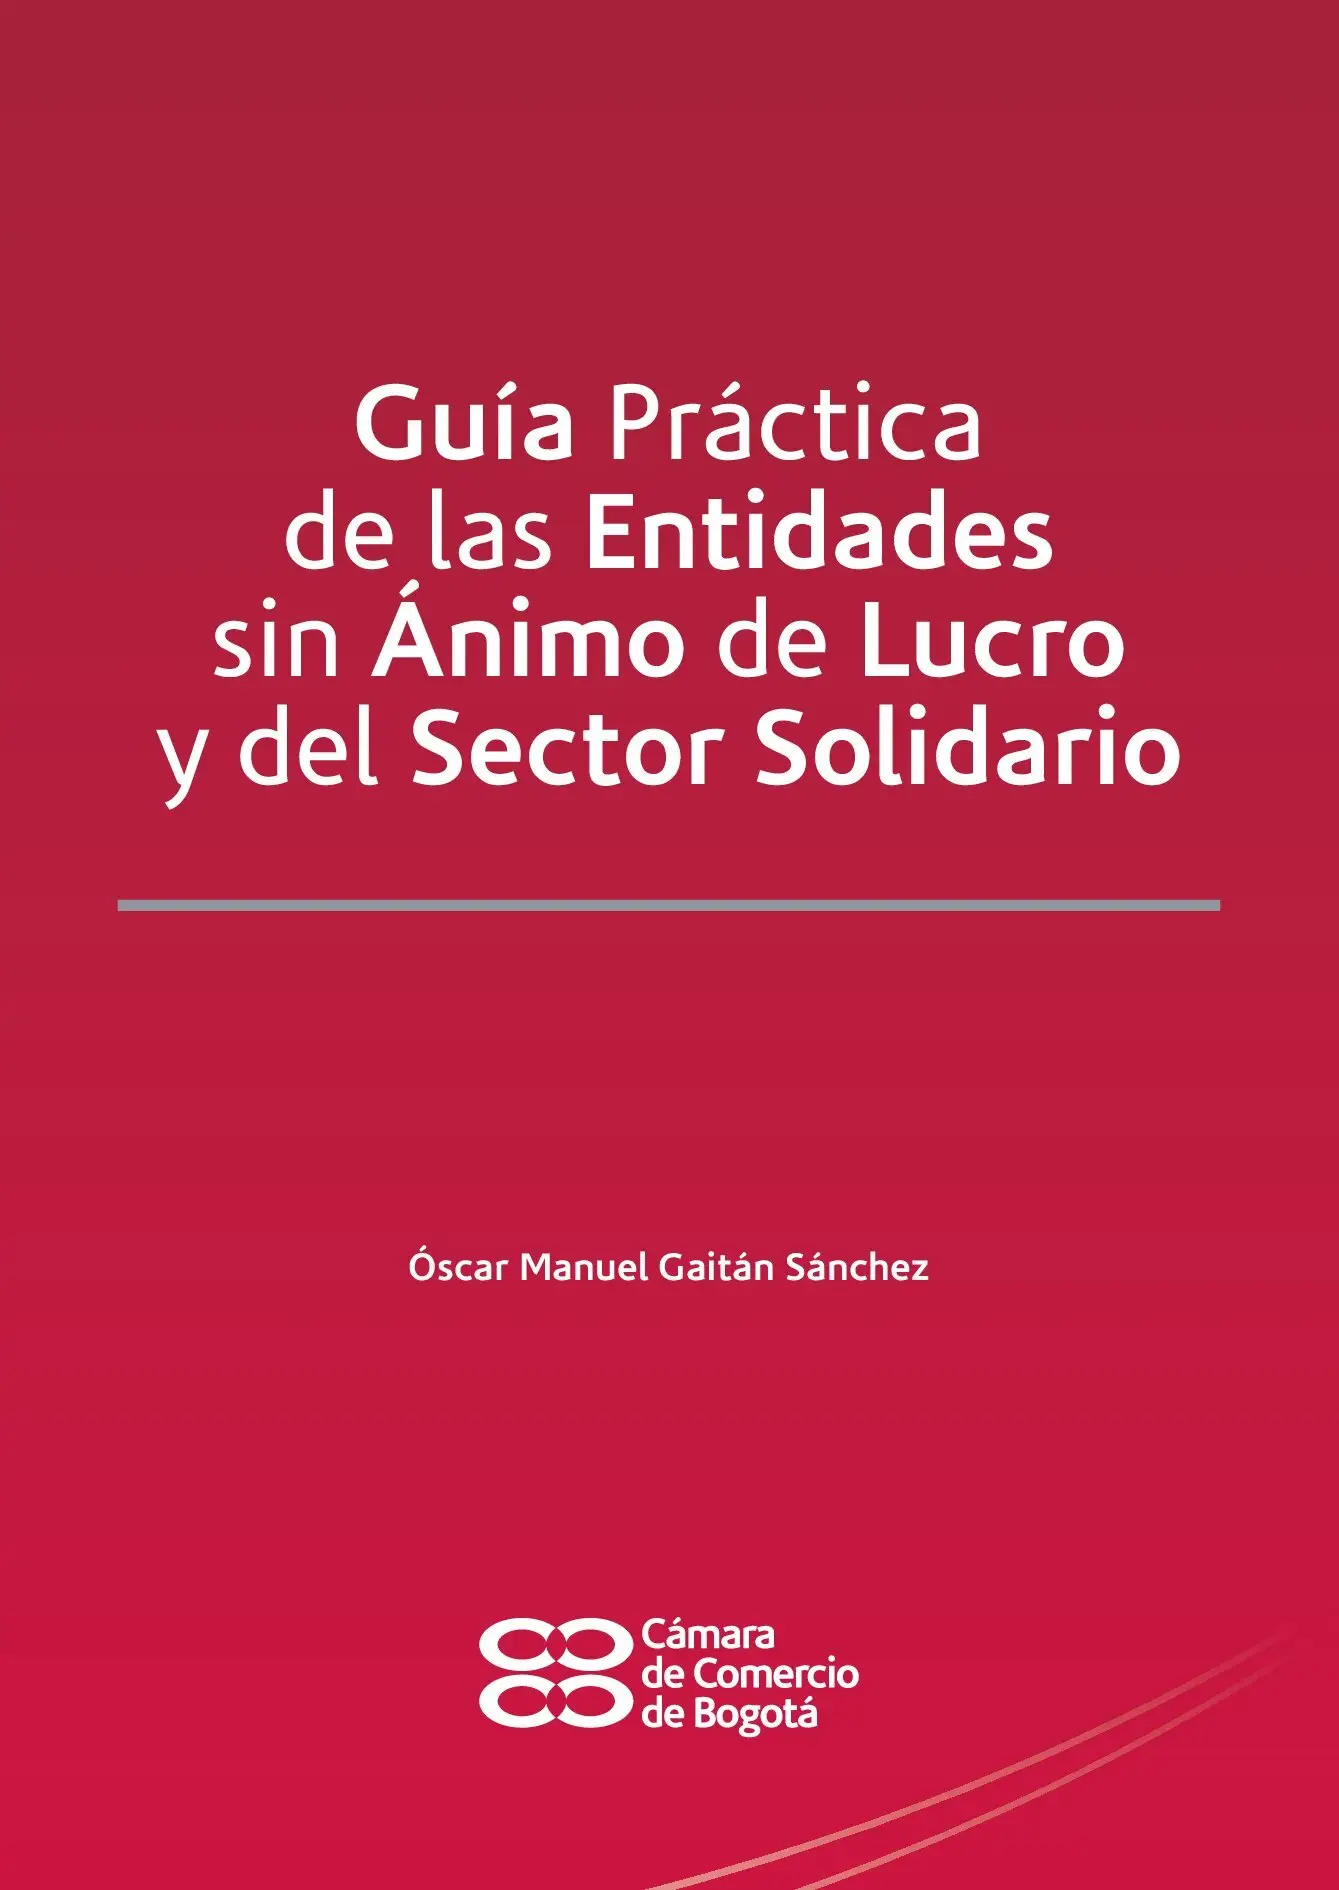 Guía Práctica de las Entidades sin Ánimo de Lucro y del Sector Solidario